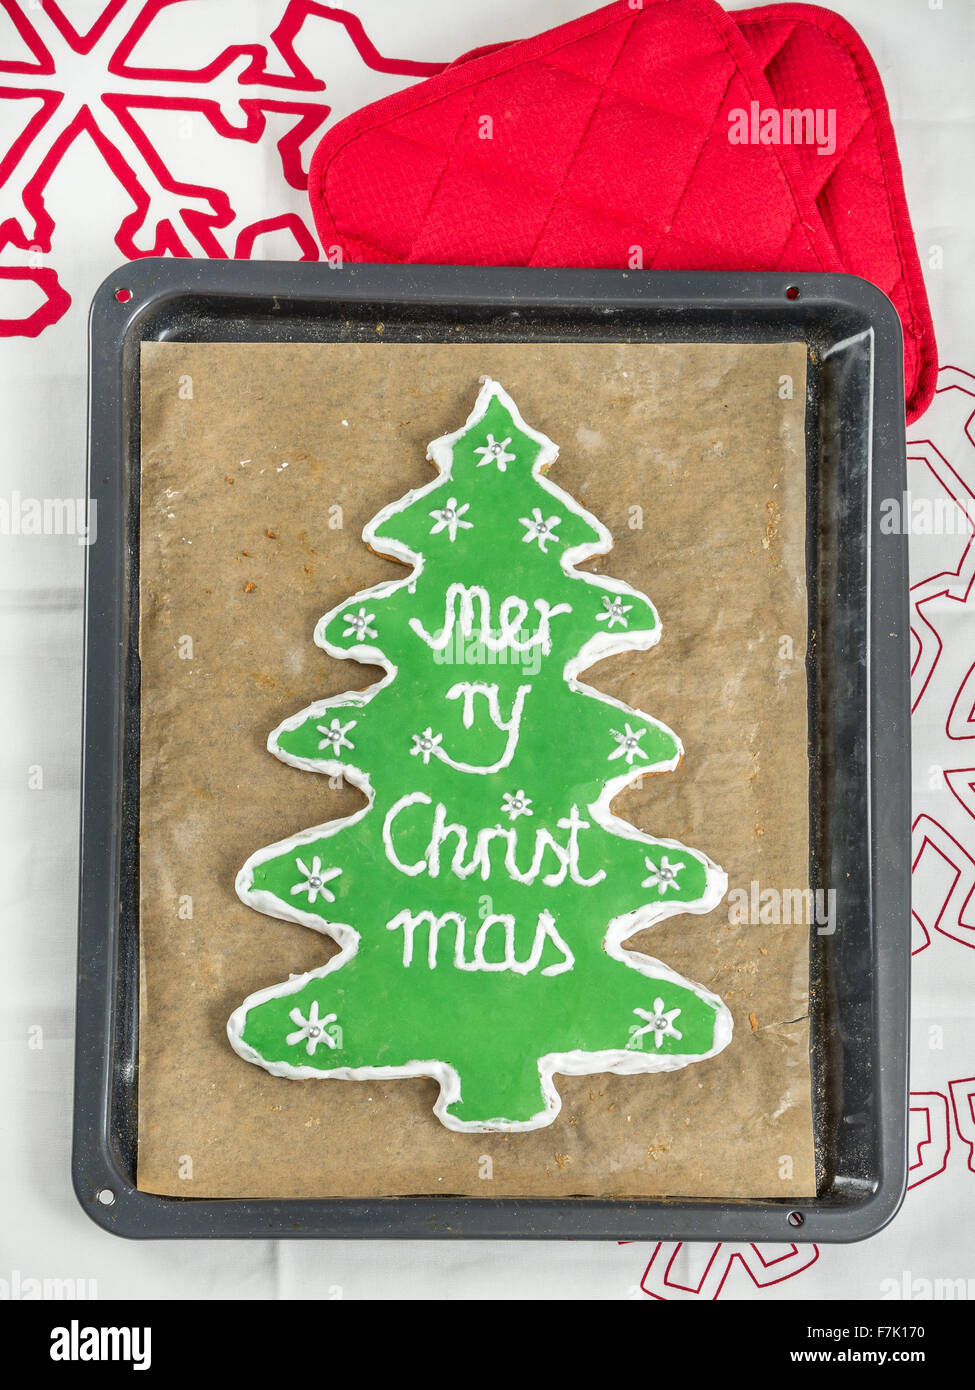 Árbol de Navidad hecho en casa-como gingerbread cookie con guinda verde y Feliz Navidad escrito sobre la bandeja para hornear. Foto de stock